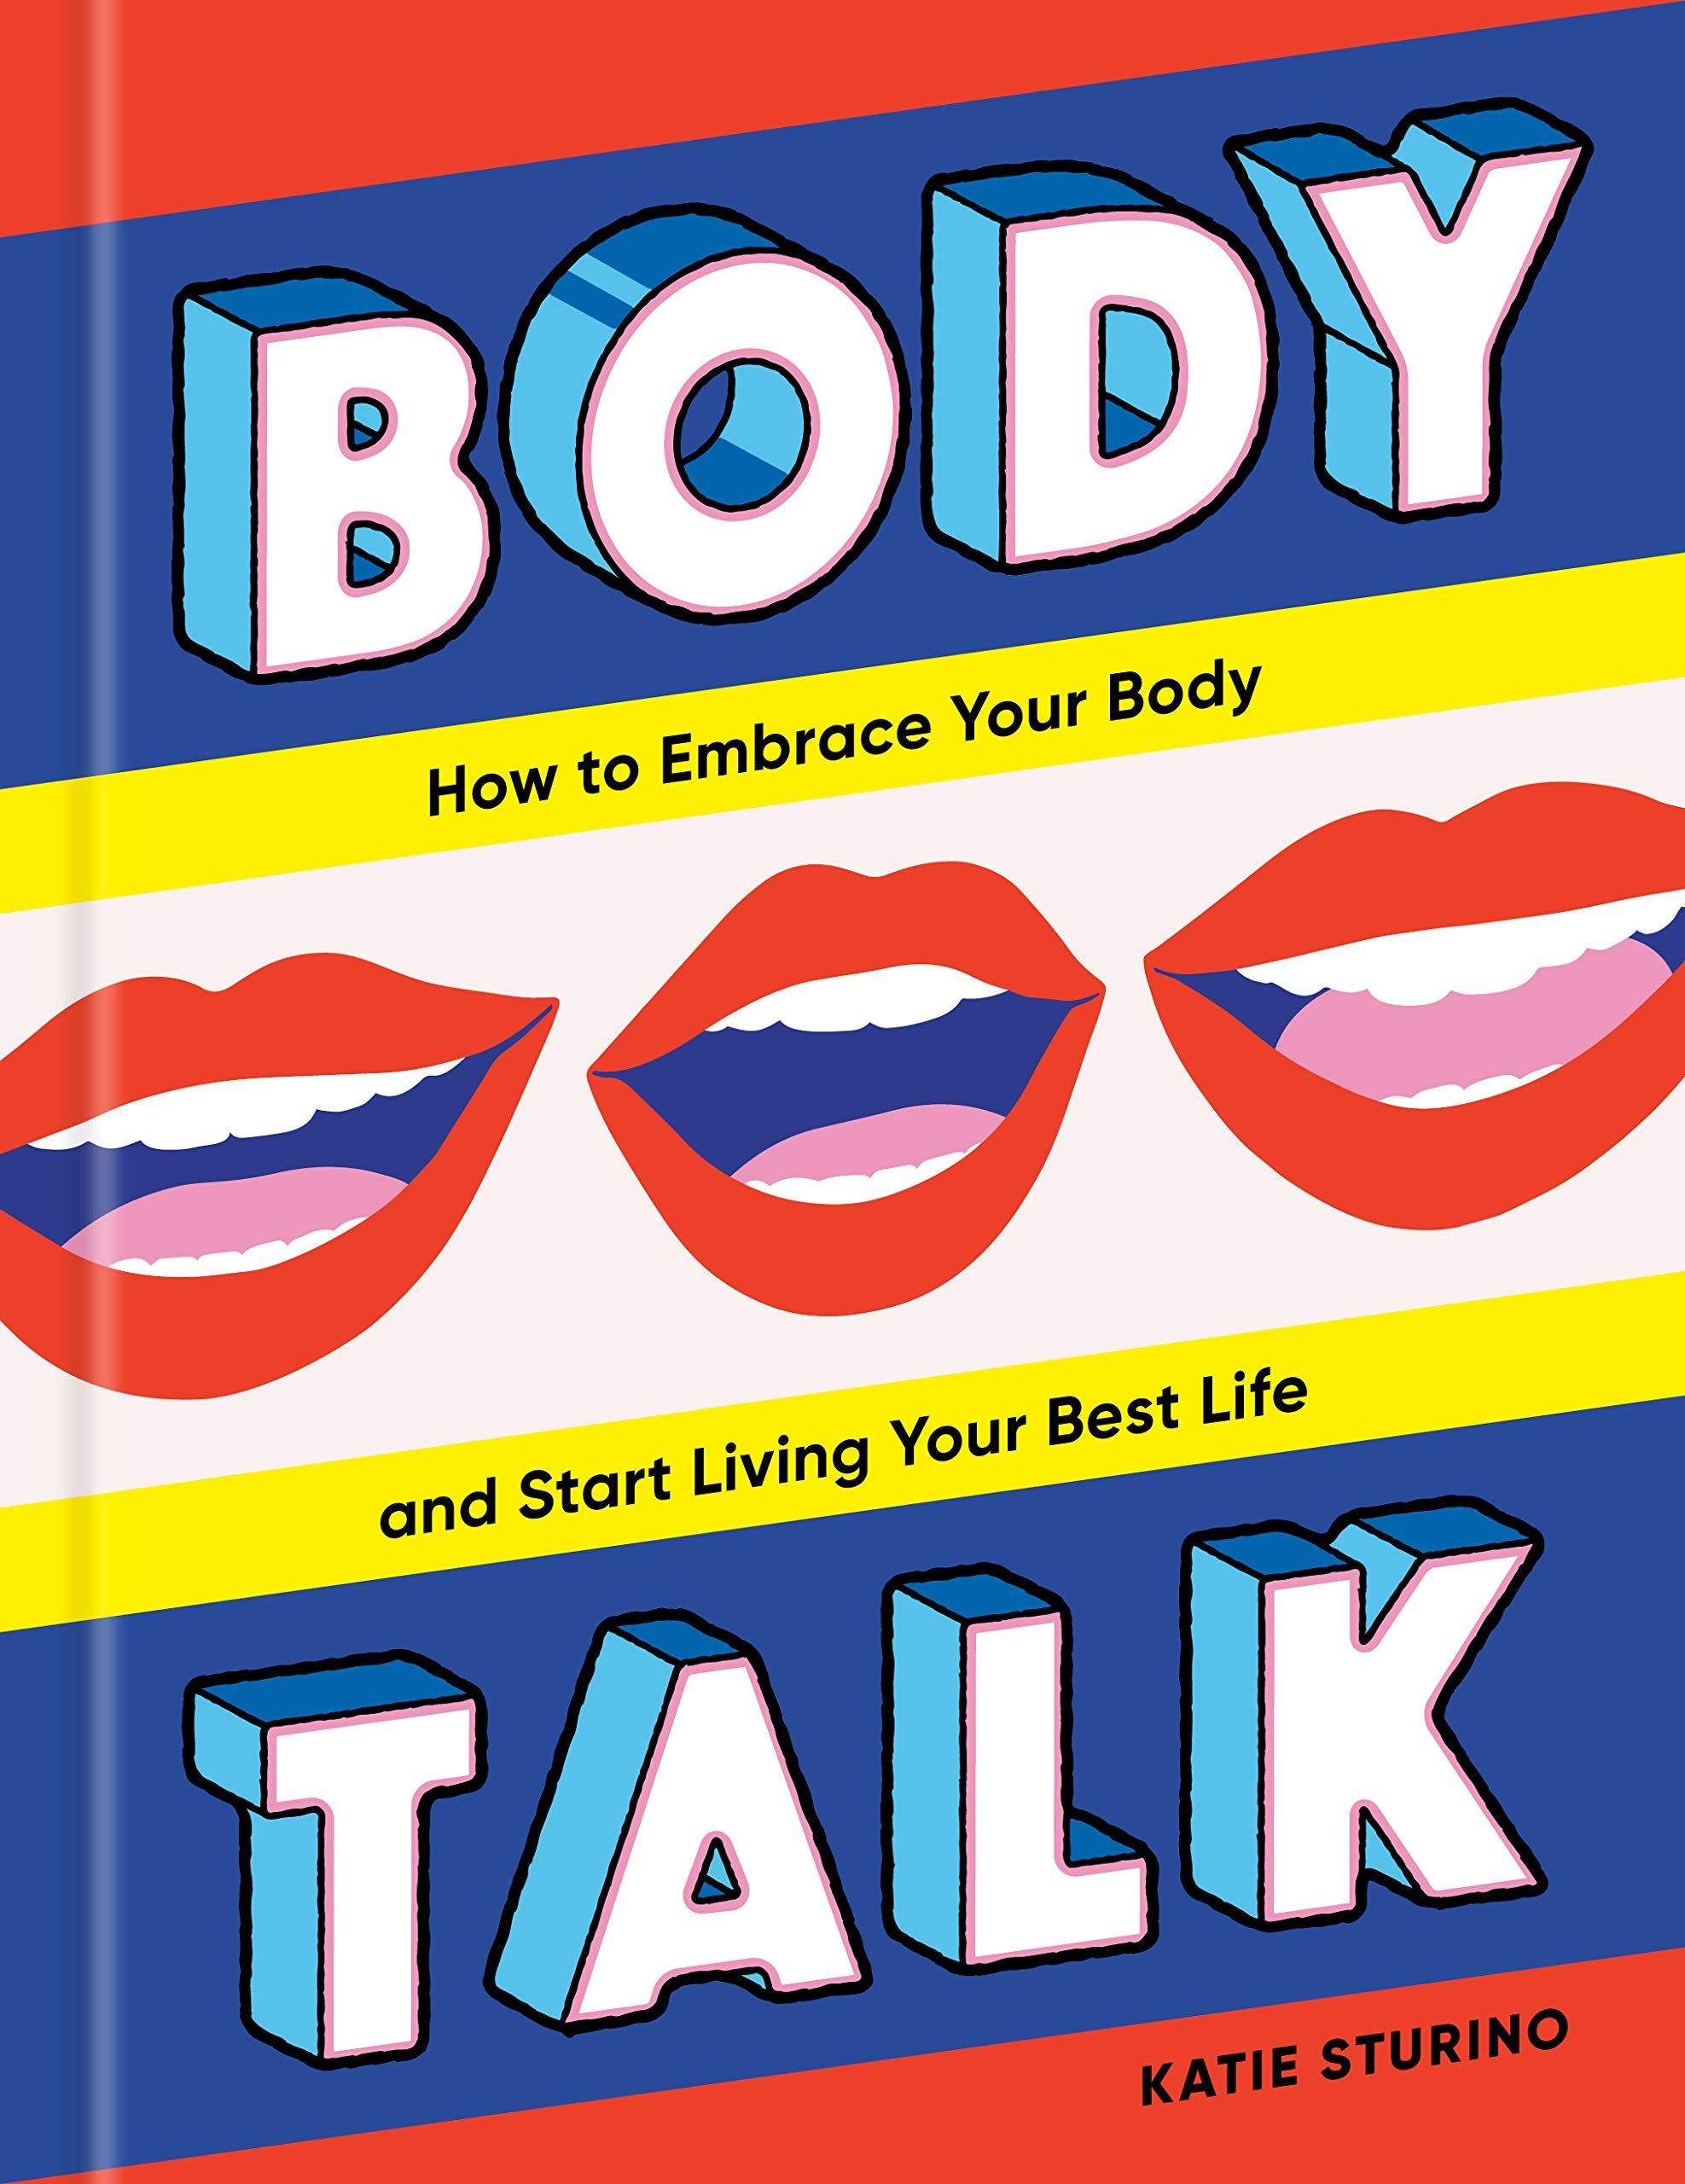 'Body Talk' by Katie Sturino